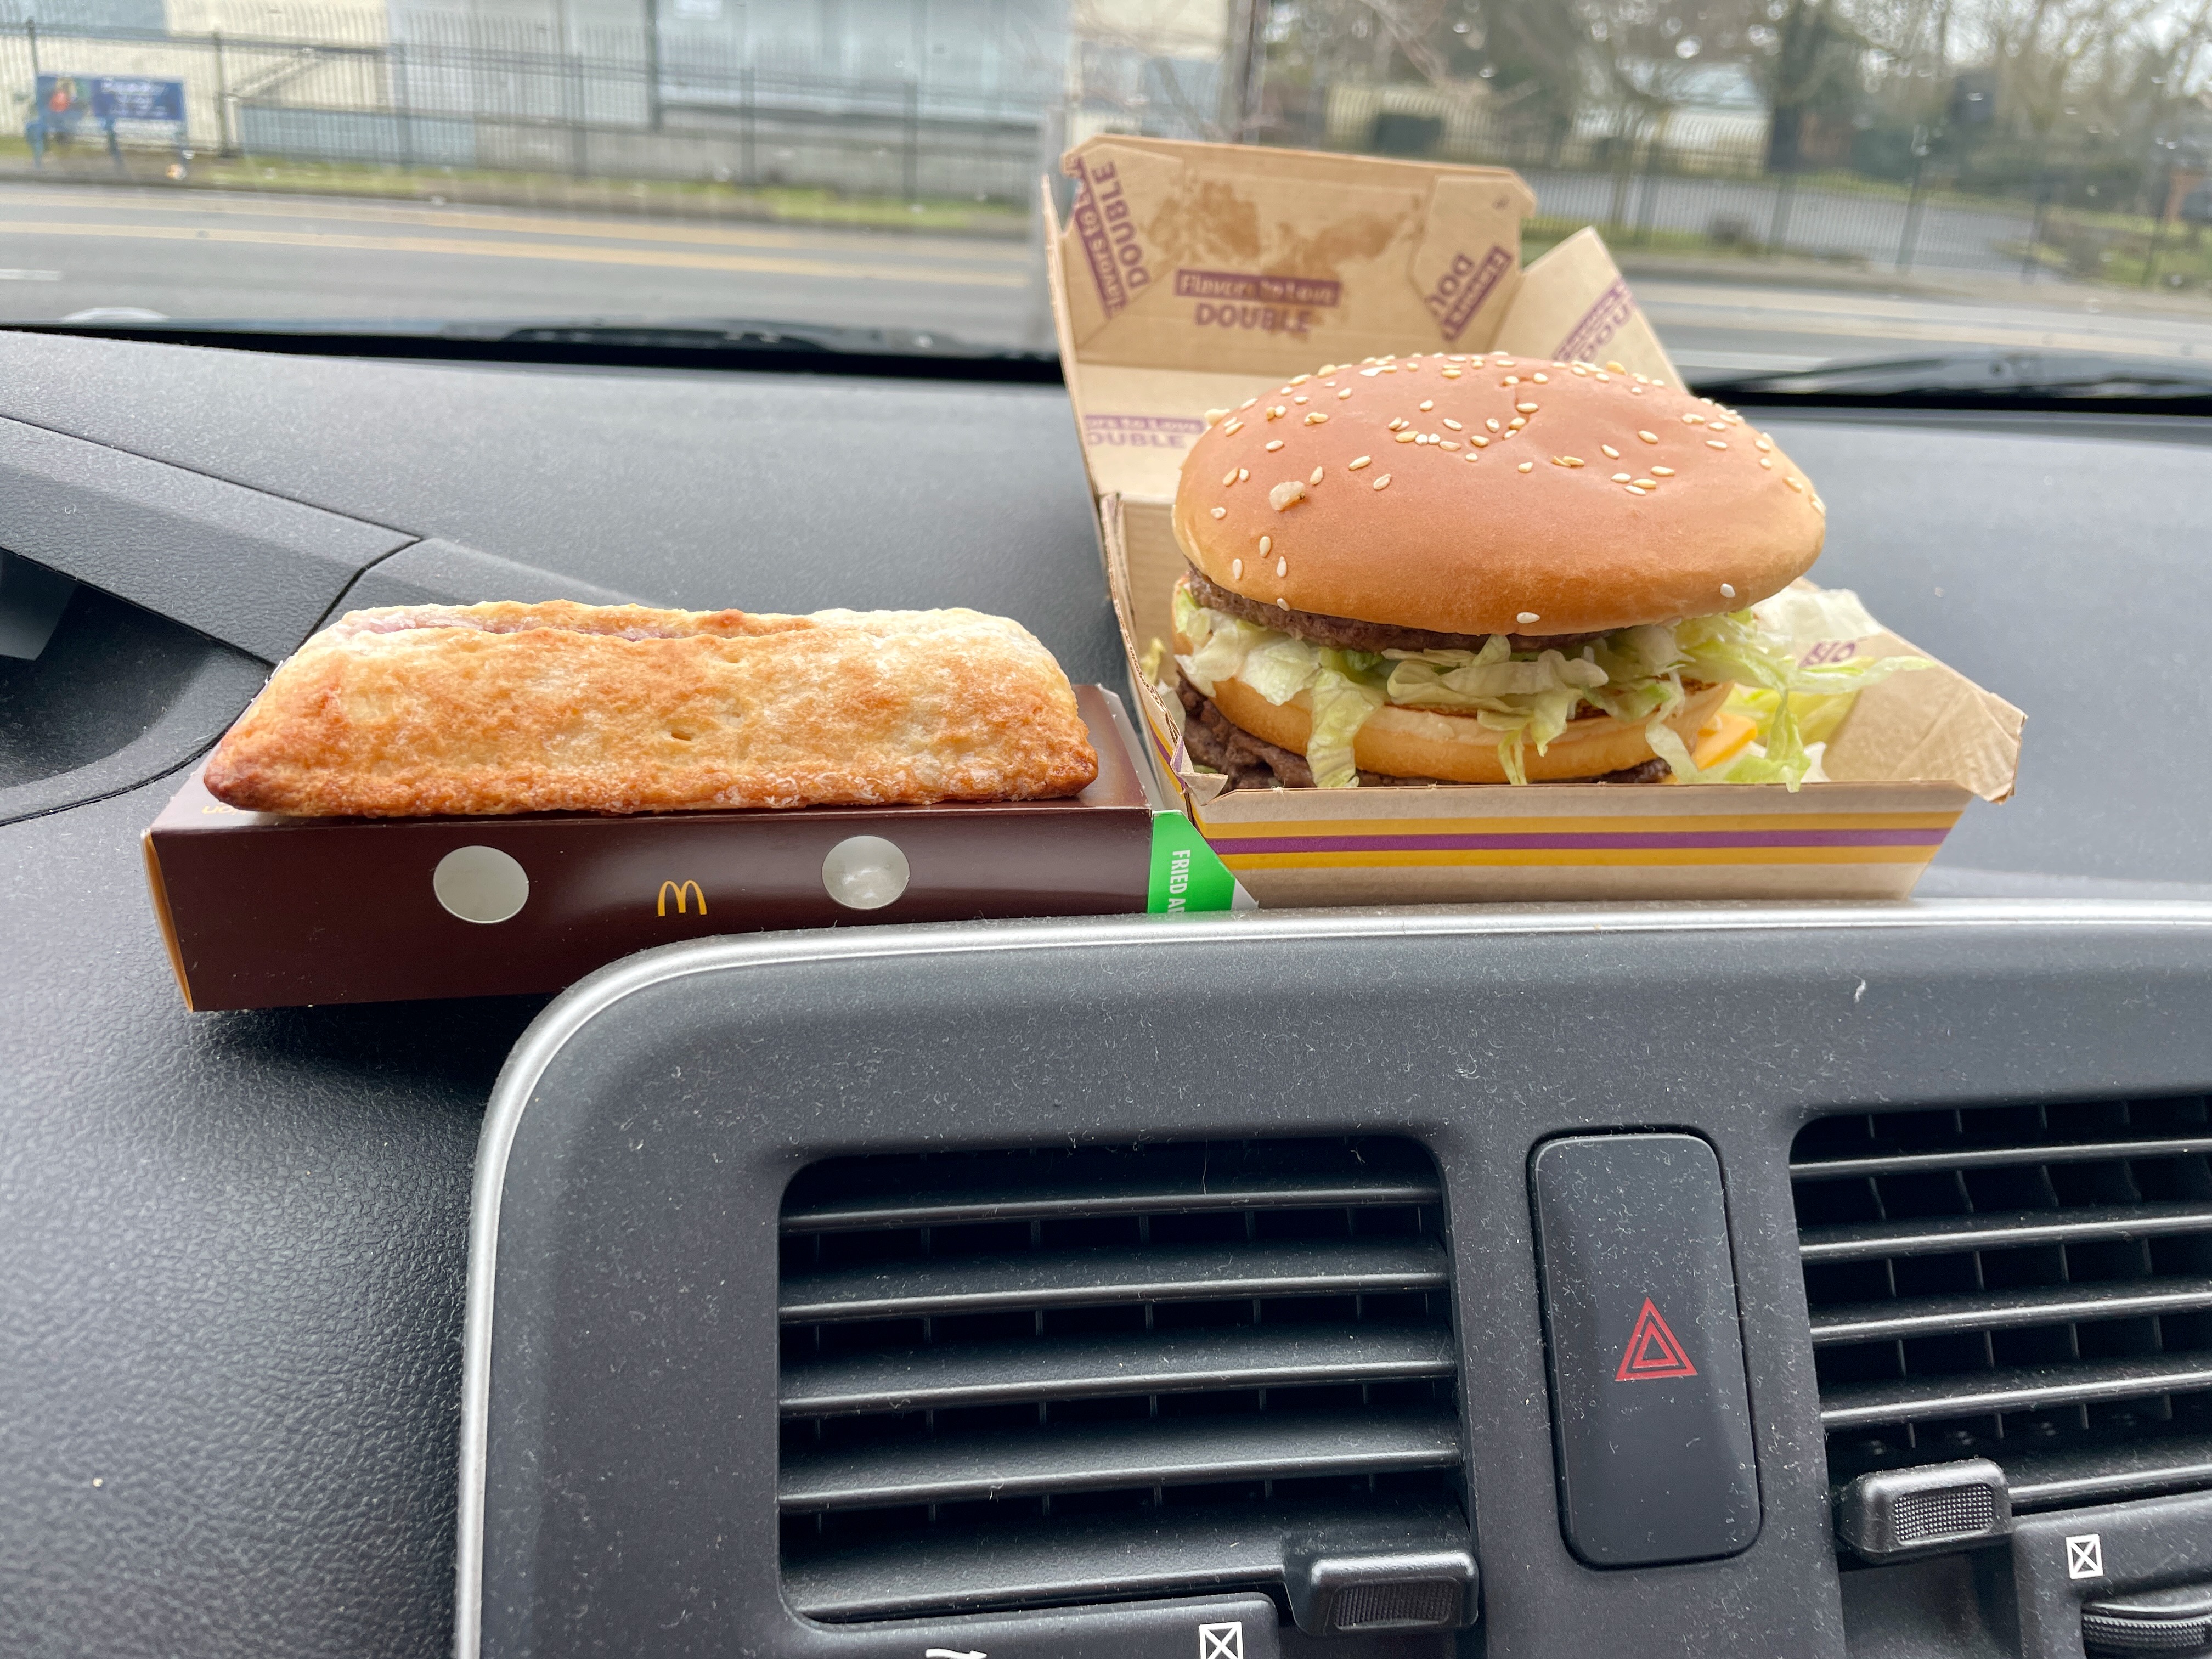 Probamos el nuevo Double Big Mac de McDonald’s y el pastel de fresas y crema